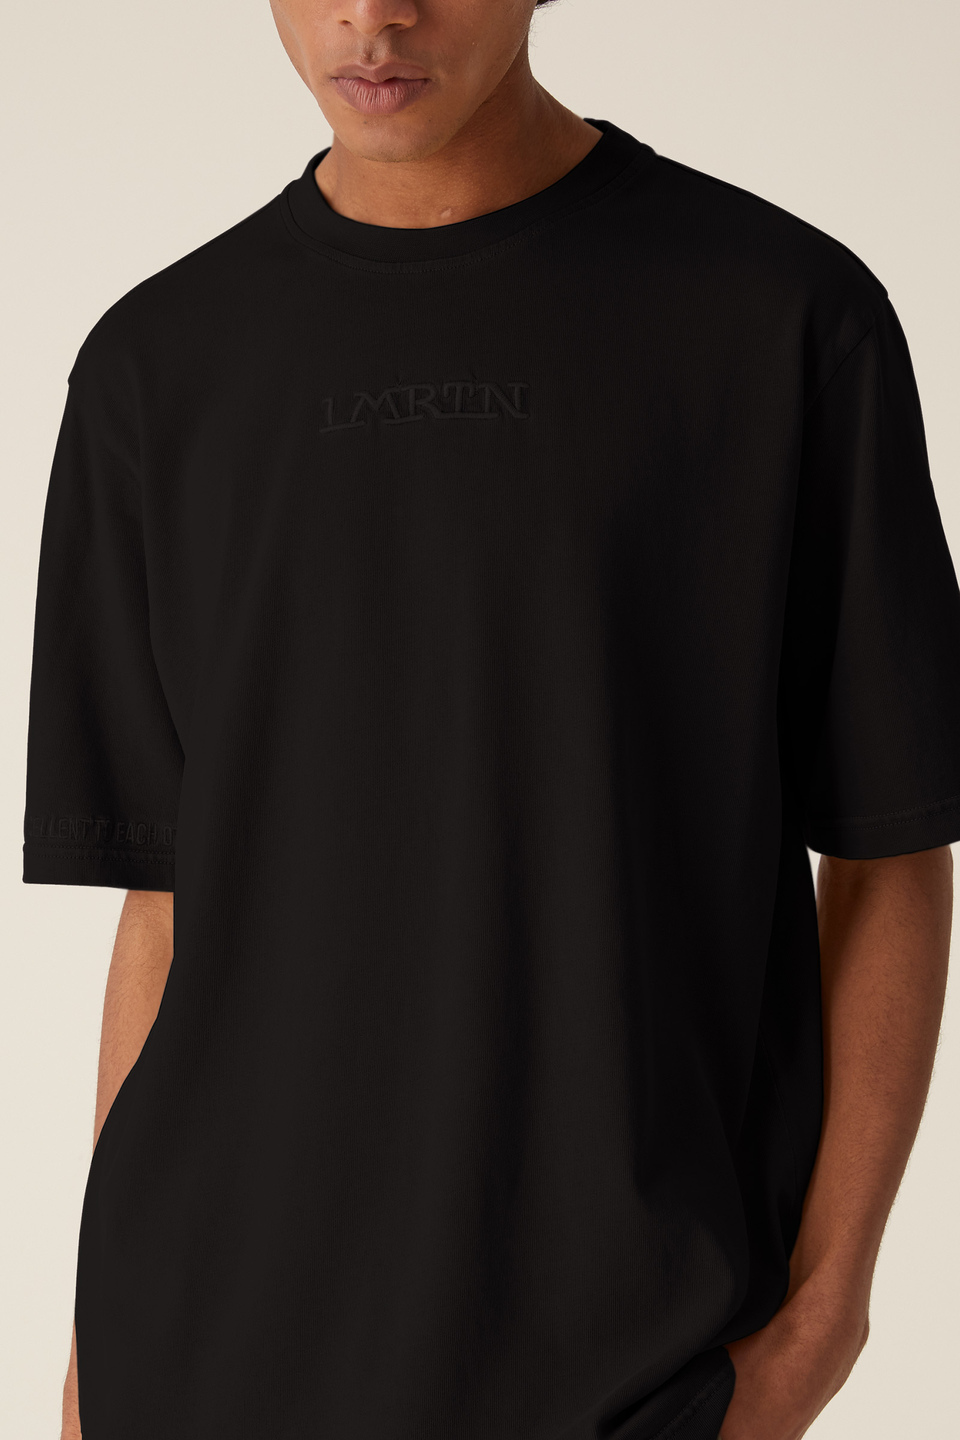 T-shirt basique LMRTN | La Martina - Official Online Shop